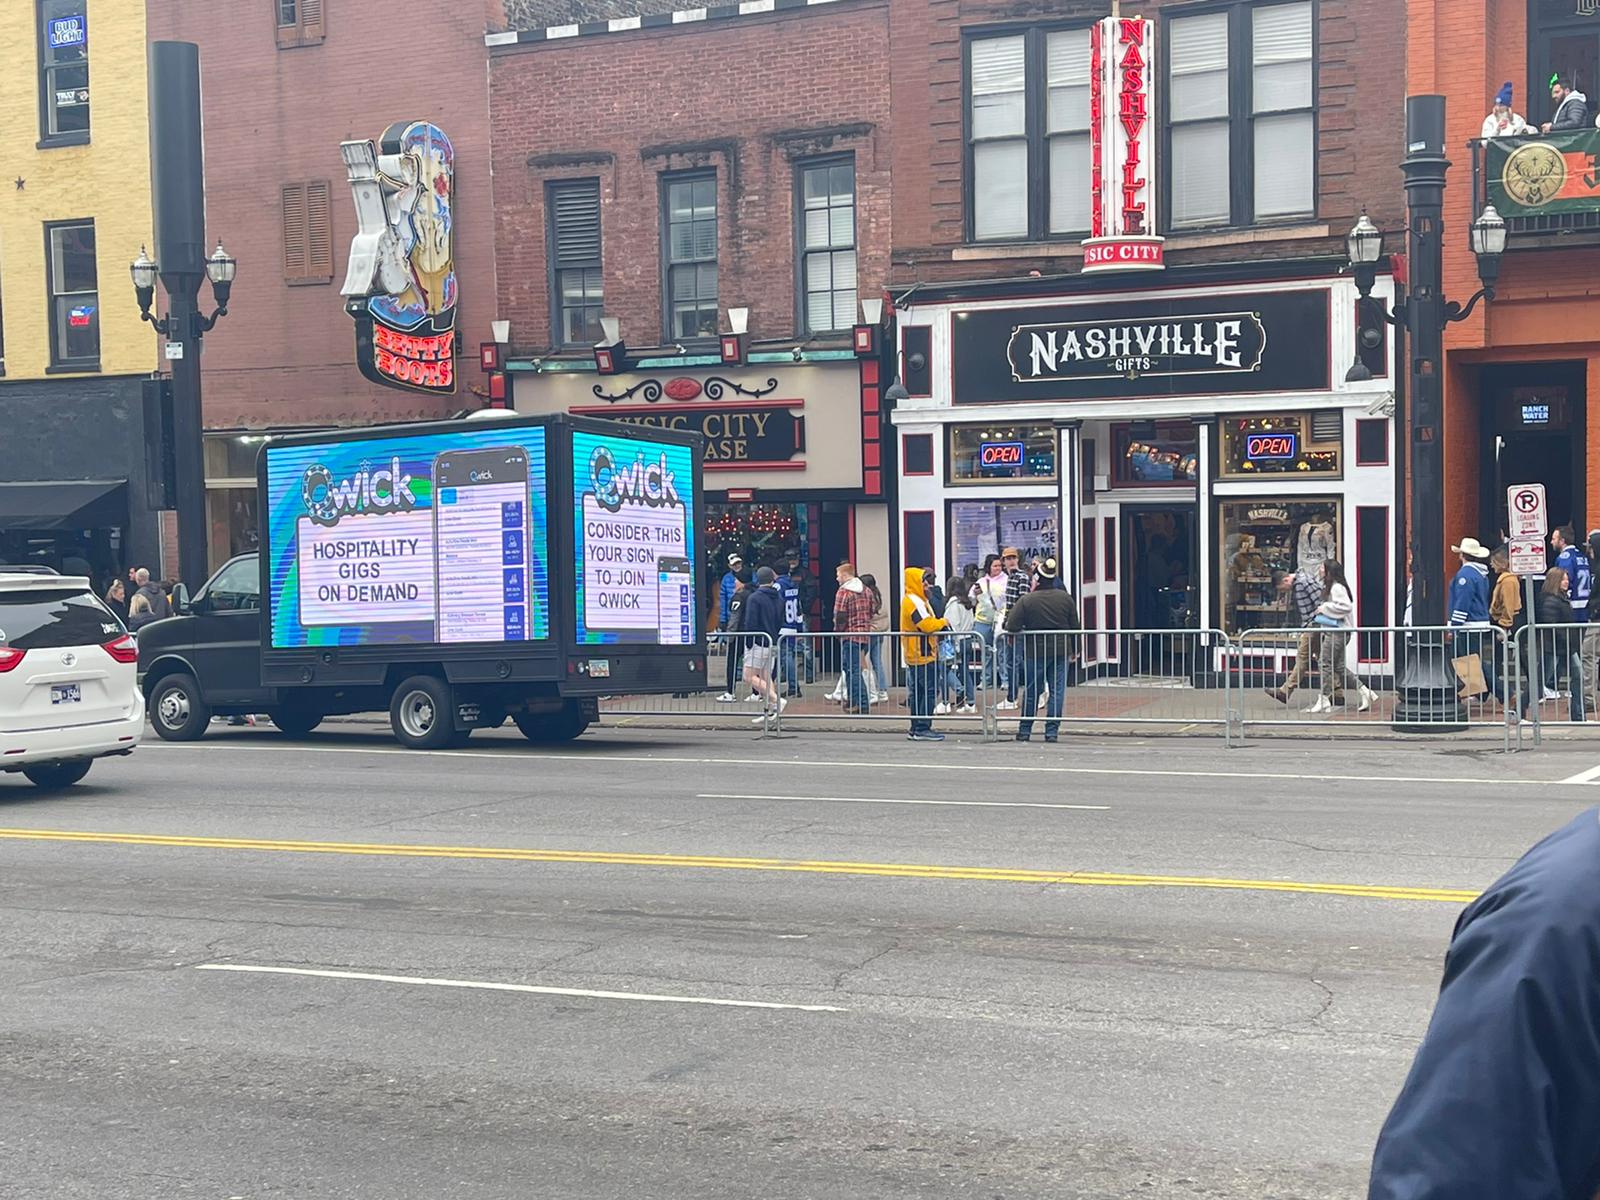 Nashville Digital Mobile Billboards Trucks